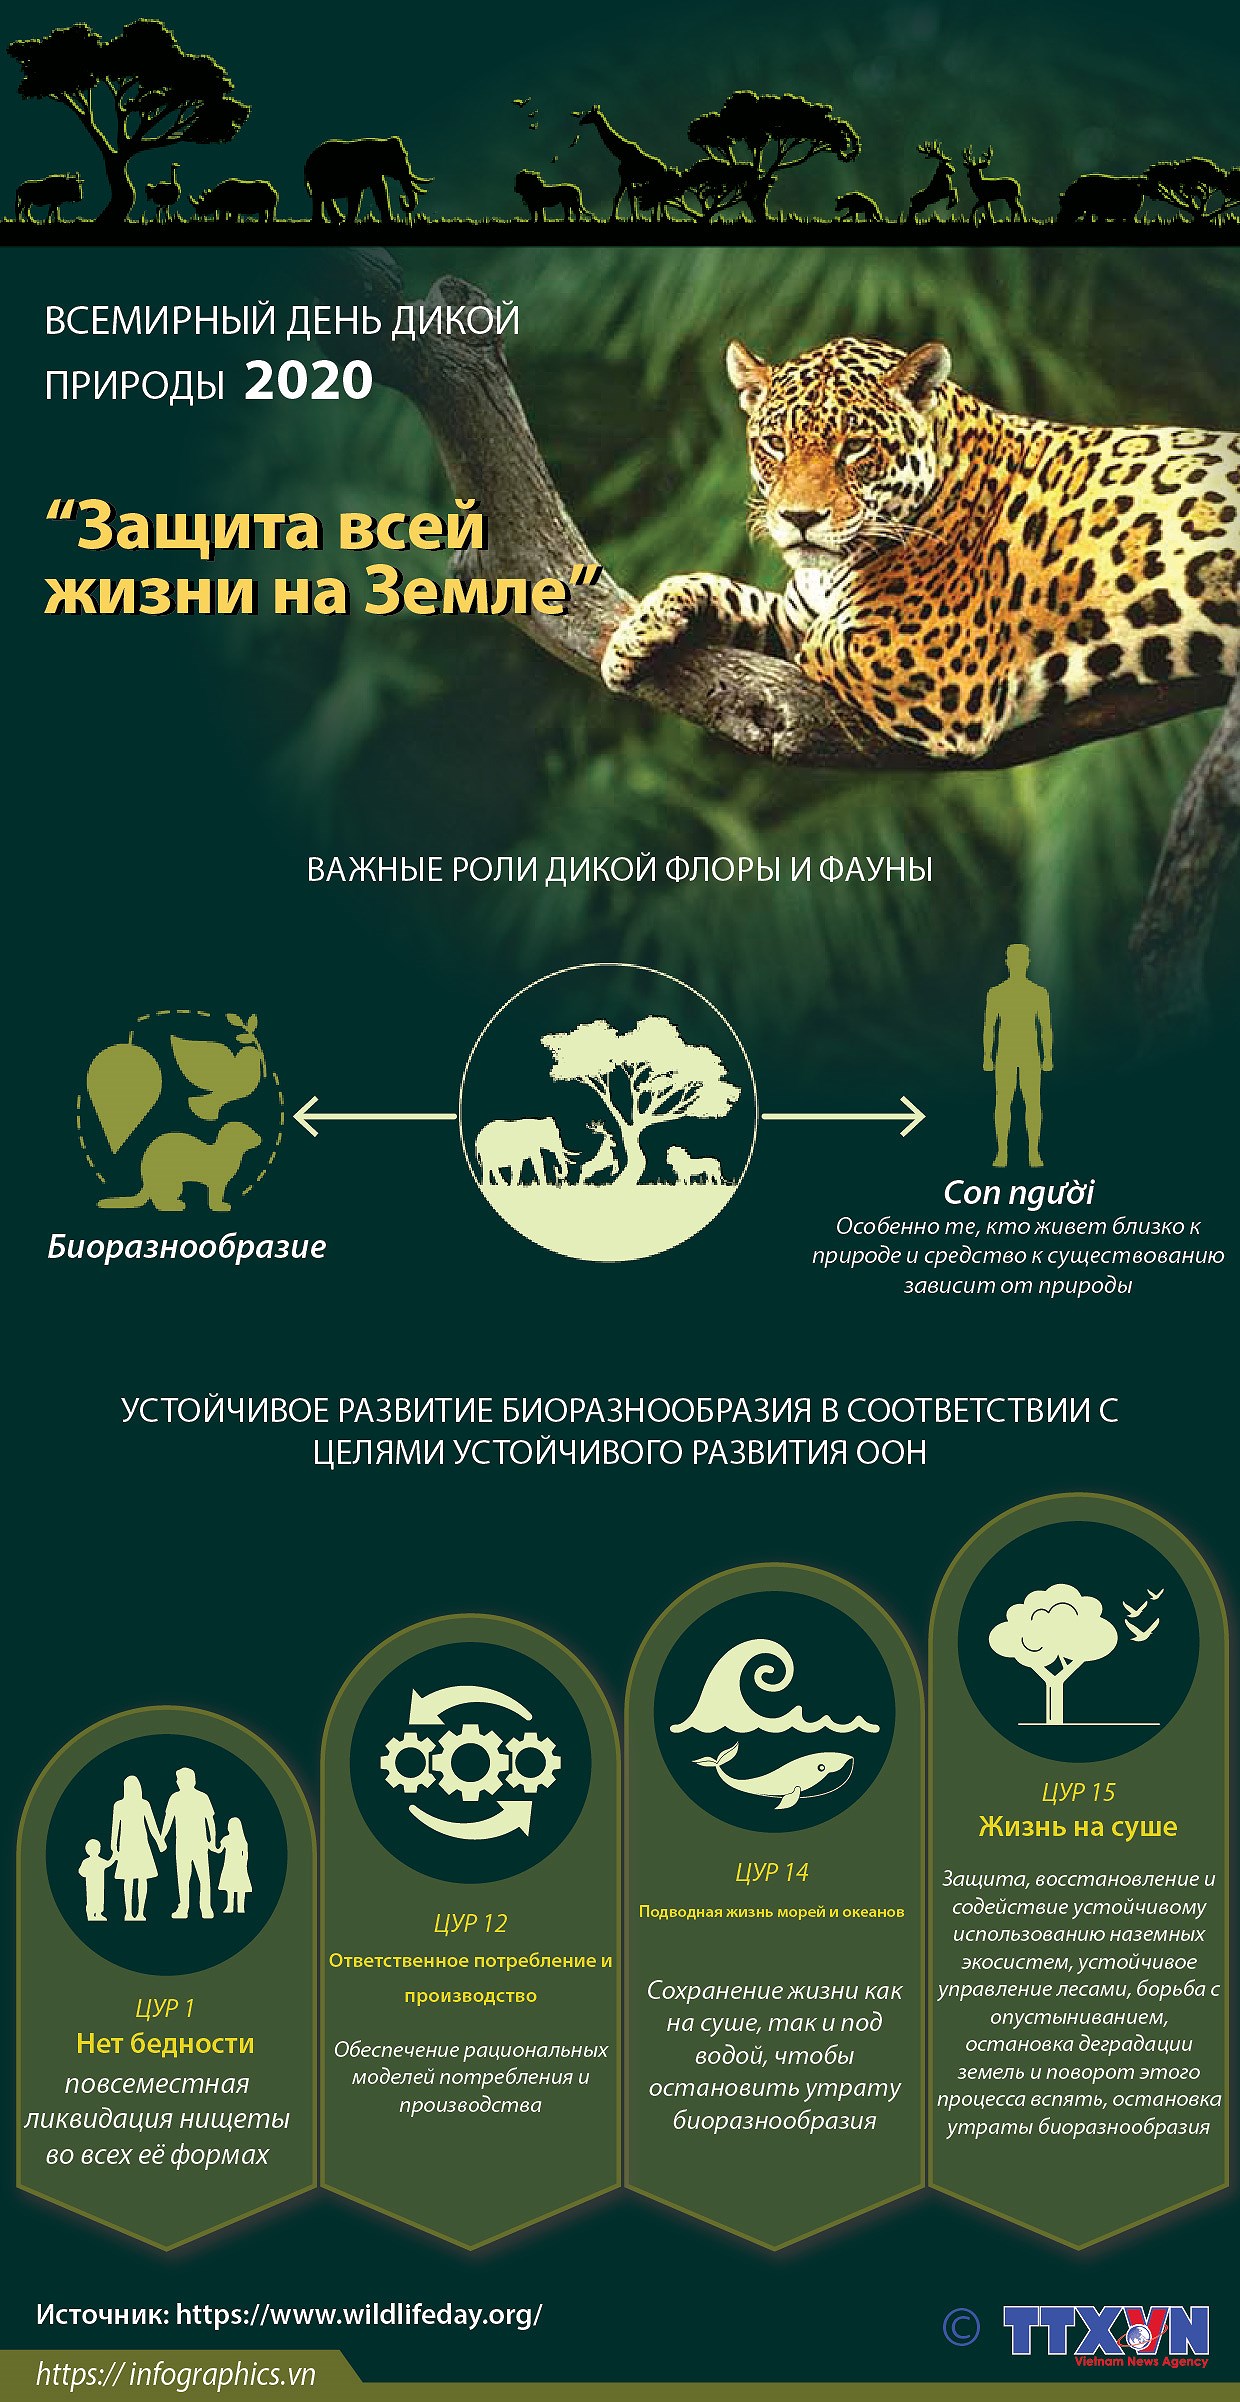 Всемирныи день дикои природы 2020 подчеркивает важность биоразнообразия hinh anh 1